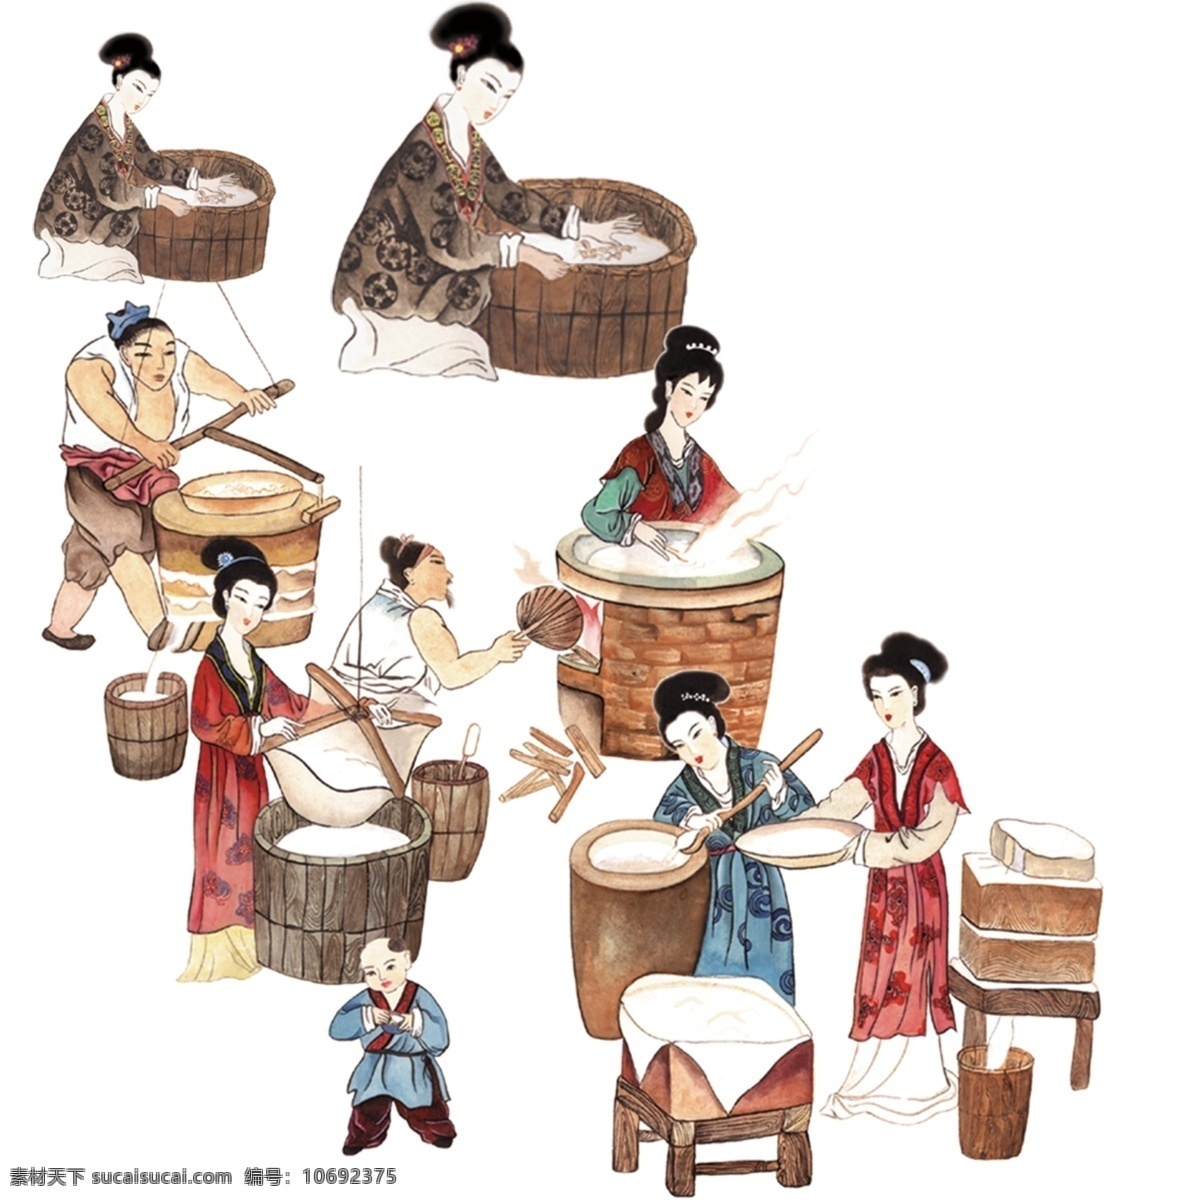 古代人物图片 古代人物 古代 人物 制作工艺 制作豆腐 步骤图 做豆腐 人物素材